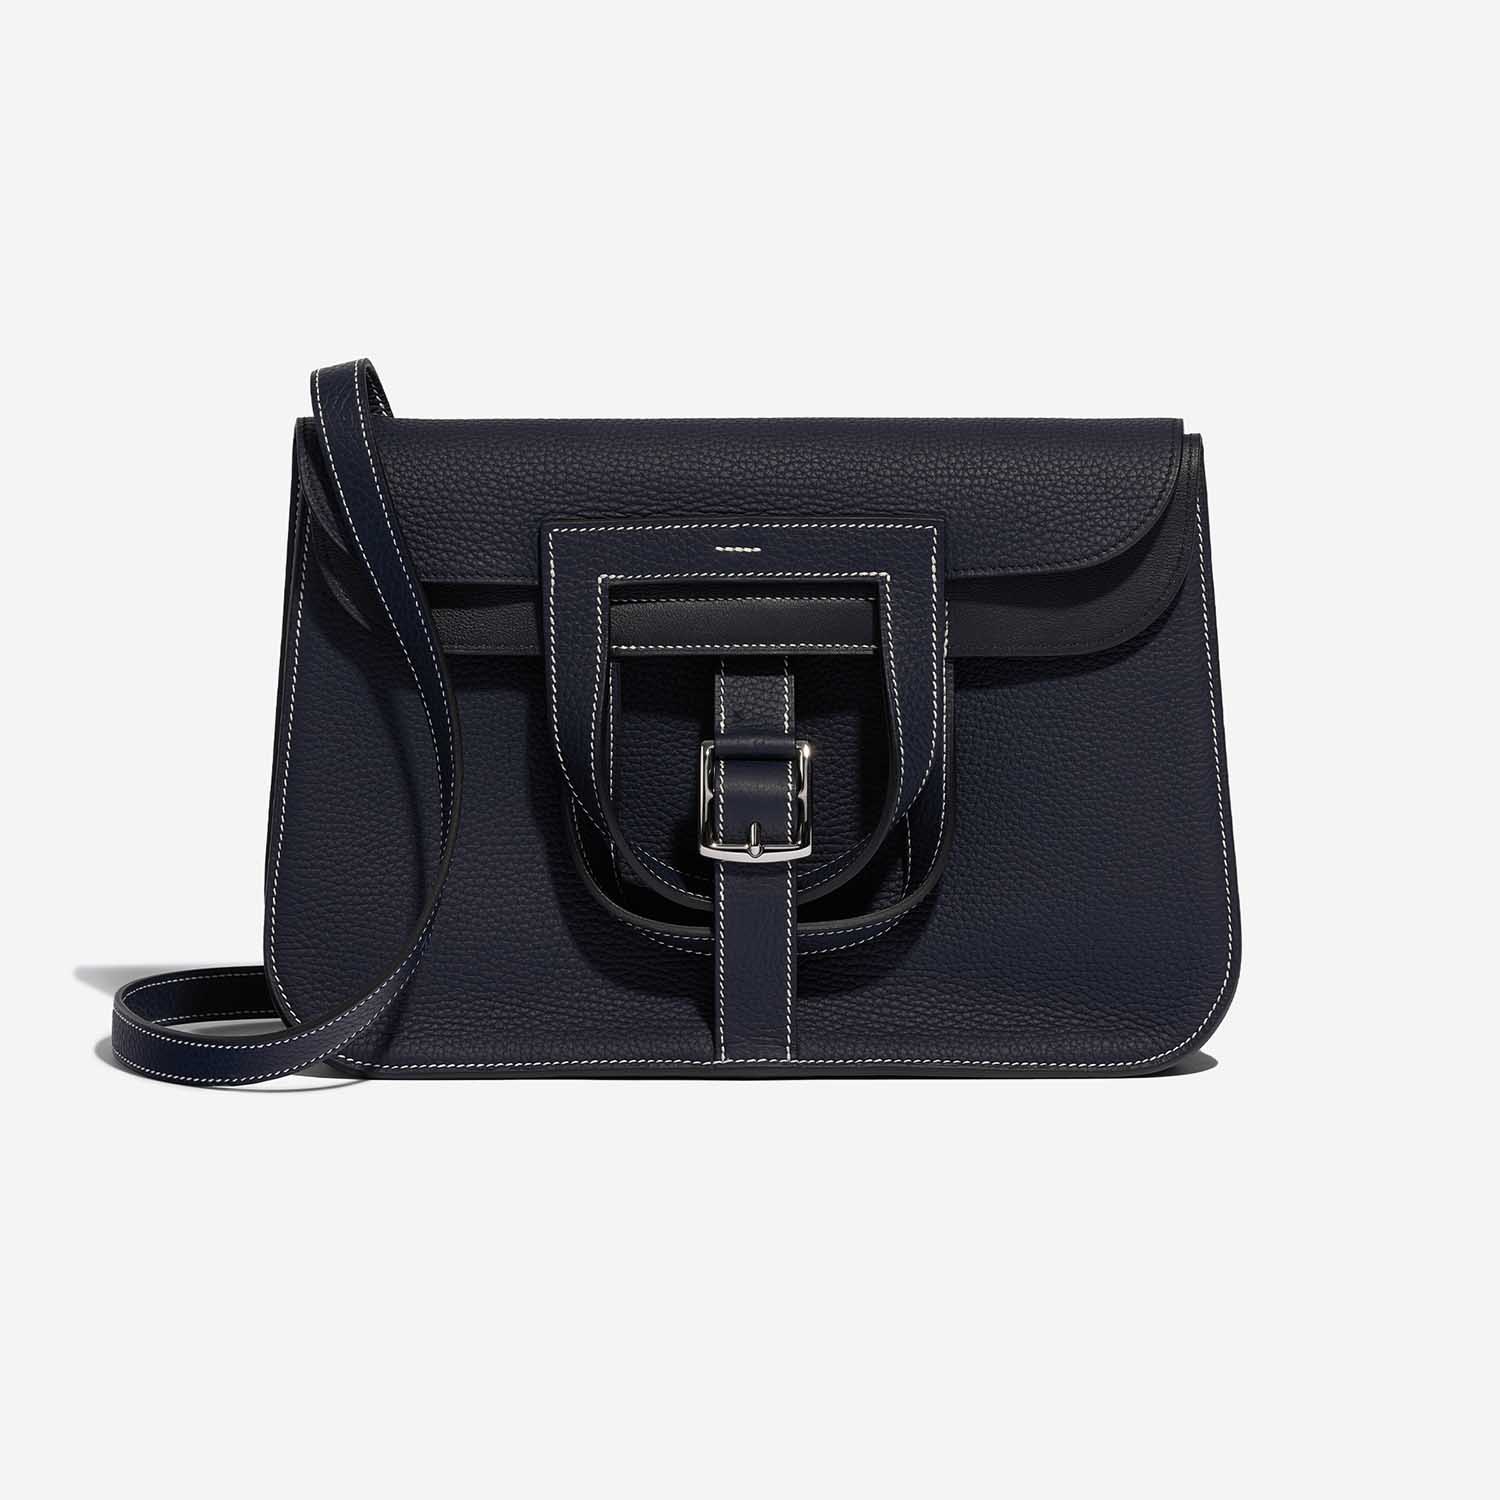 Gebrauchte Hermès Tasche Halzan 31 Clemence Bleu Nuit / Schwarz Schwarz, Blaue Front | Verkaufen Sie Ihre Designer-Tasche auf Saclab.com